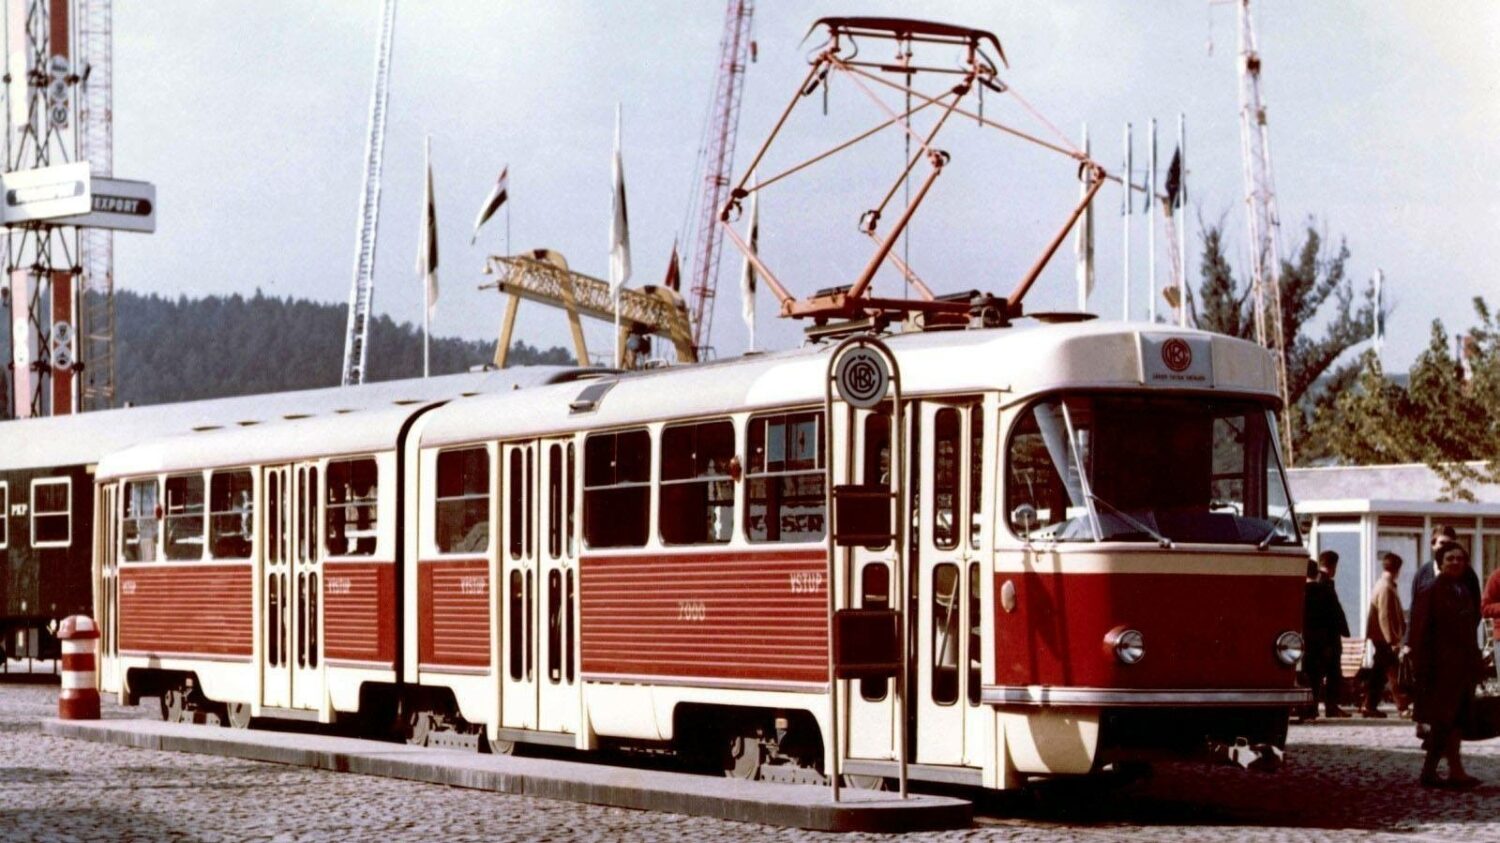 Prototyp tramvaje K2 sice nesl ev. č. 7000 stejně jako dnešní retro tramvaj téhož typu pražského DP, bylo tomu tak ale až na veletrhu v Brně, nikoli během působení v Praze. S číslem 7000 byl vůz následně nasazován do provozu v Mostě a Litvínově. (foto: ČKD Tatra, sbírka: Jindřich Sulek)